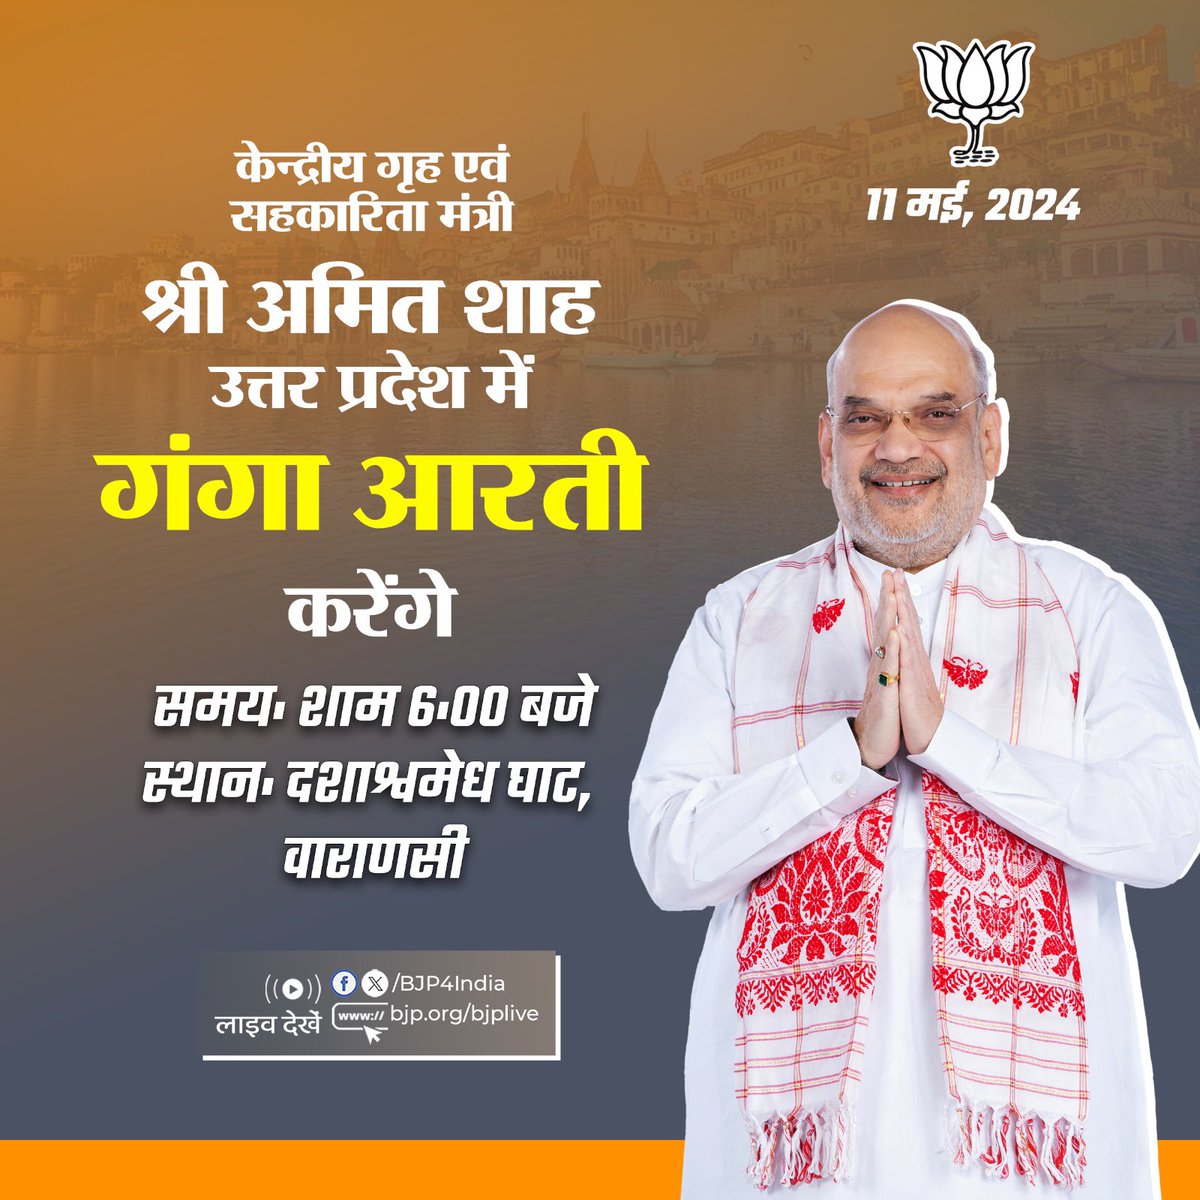 केन्द्रीय गृह एवं सहकारिता मंत्री श्री @AmitShah 11 मई, 2024 को वाराणसी, उत्तर प्रदेश में गंगा आरती करेंगे। लाइव देखें: 📺x.com/bjp4india 📺facebook.com/BJP4India 📺youtube.com/BJP4India 📺bjp.org/bjplive